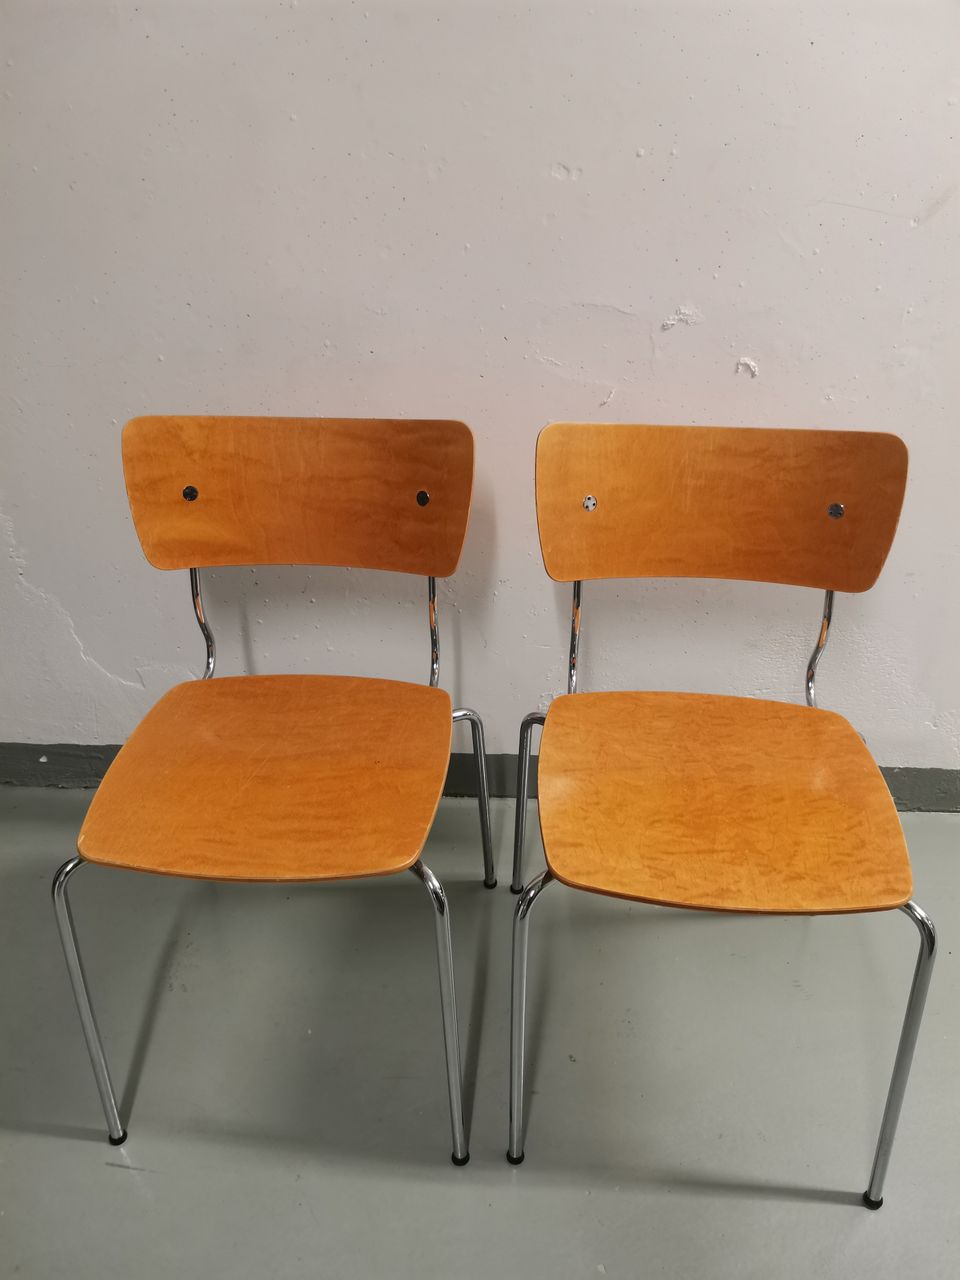 2 kpl Piiroinen tuoleja